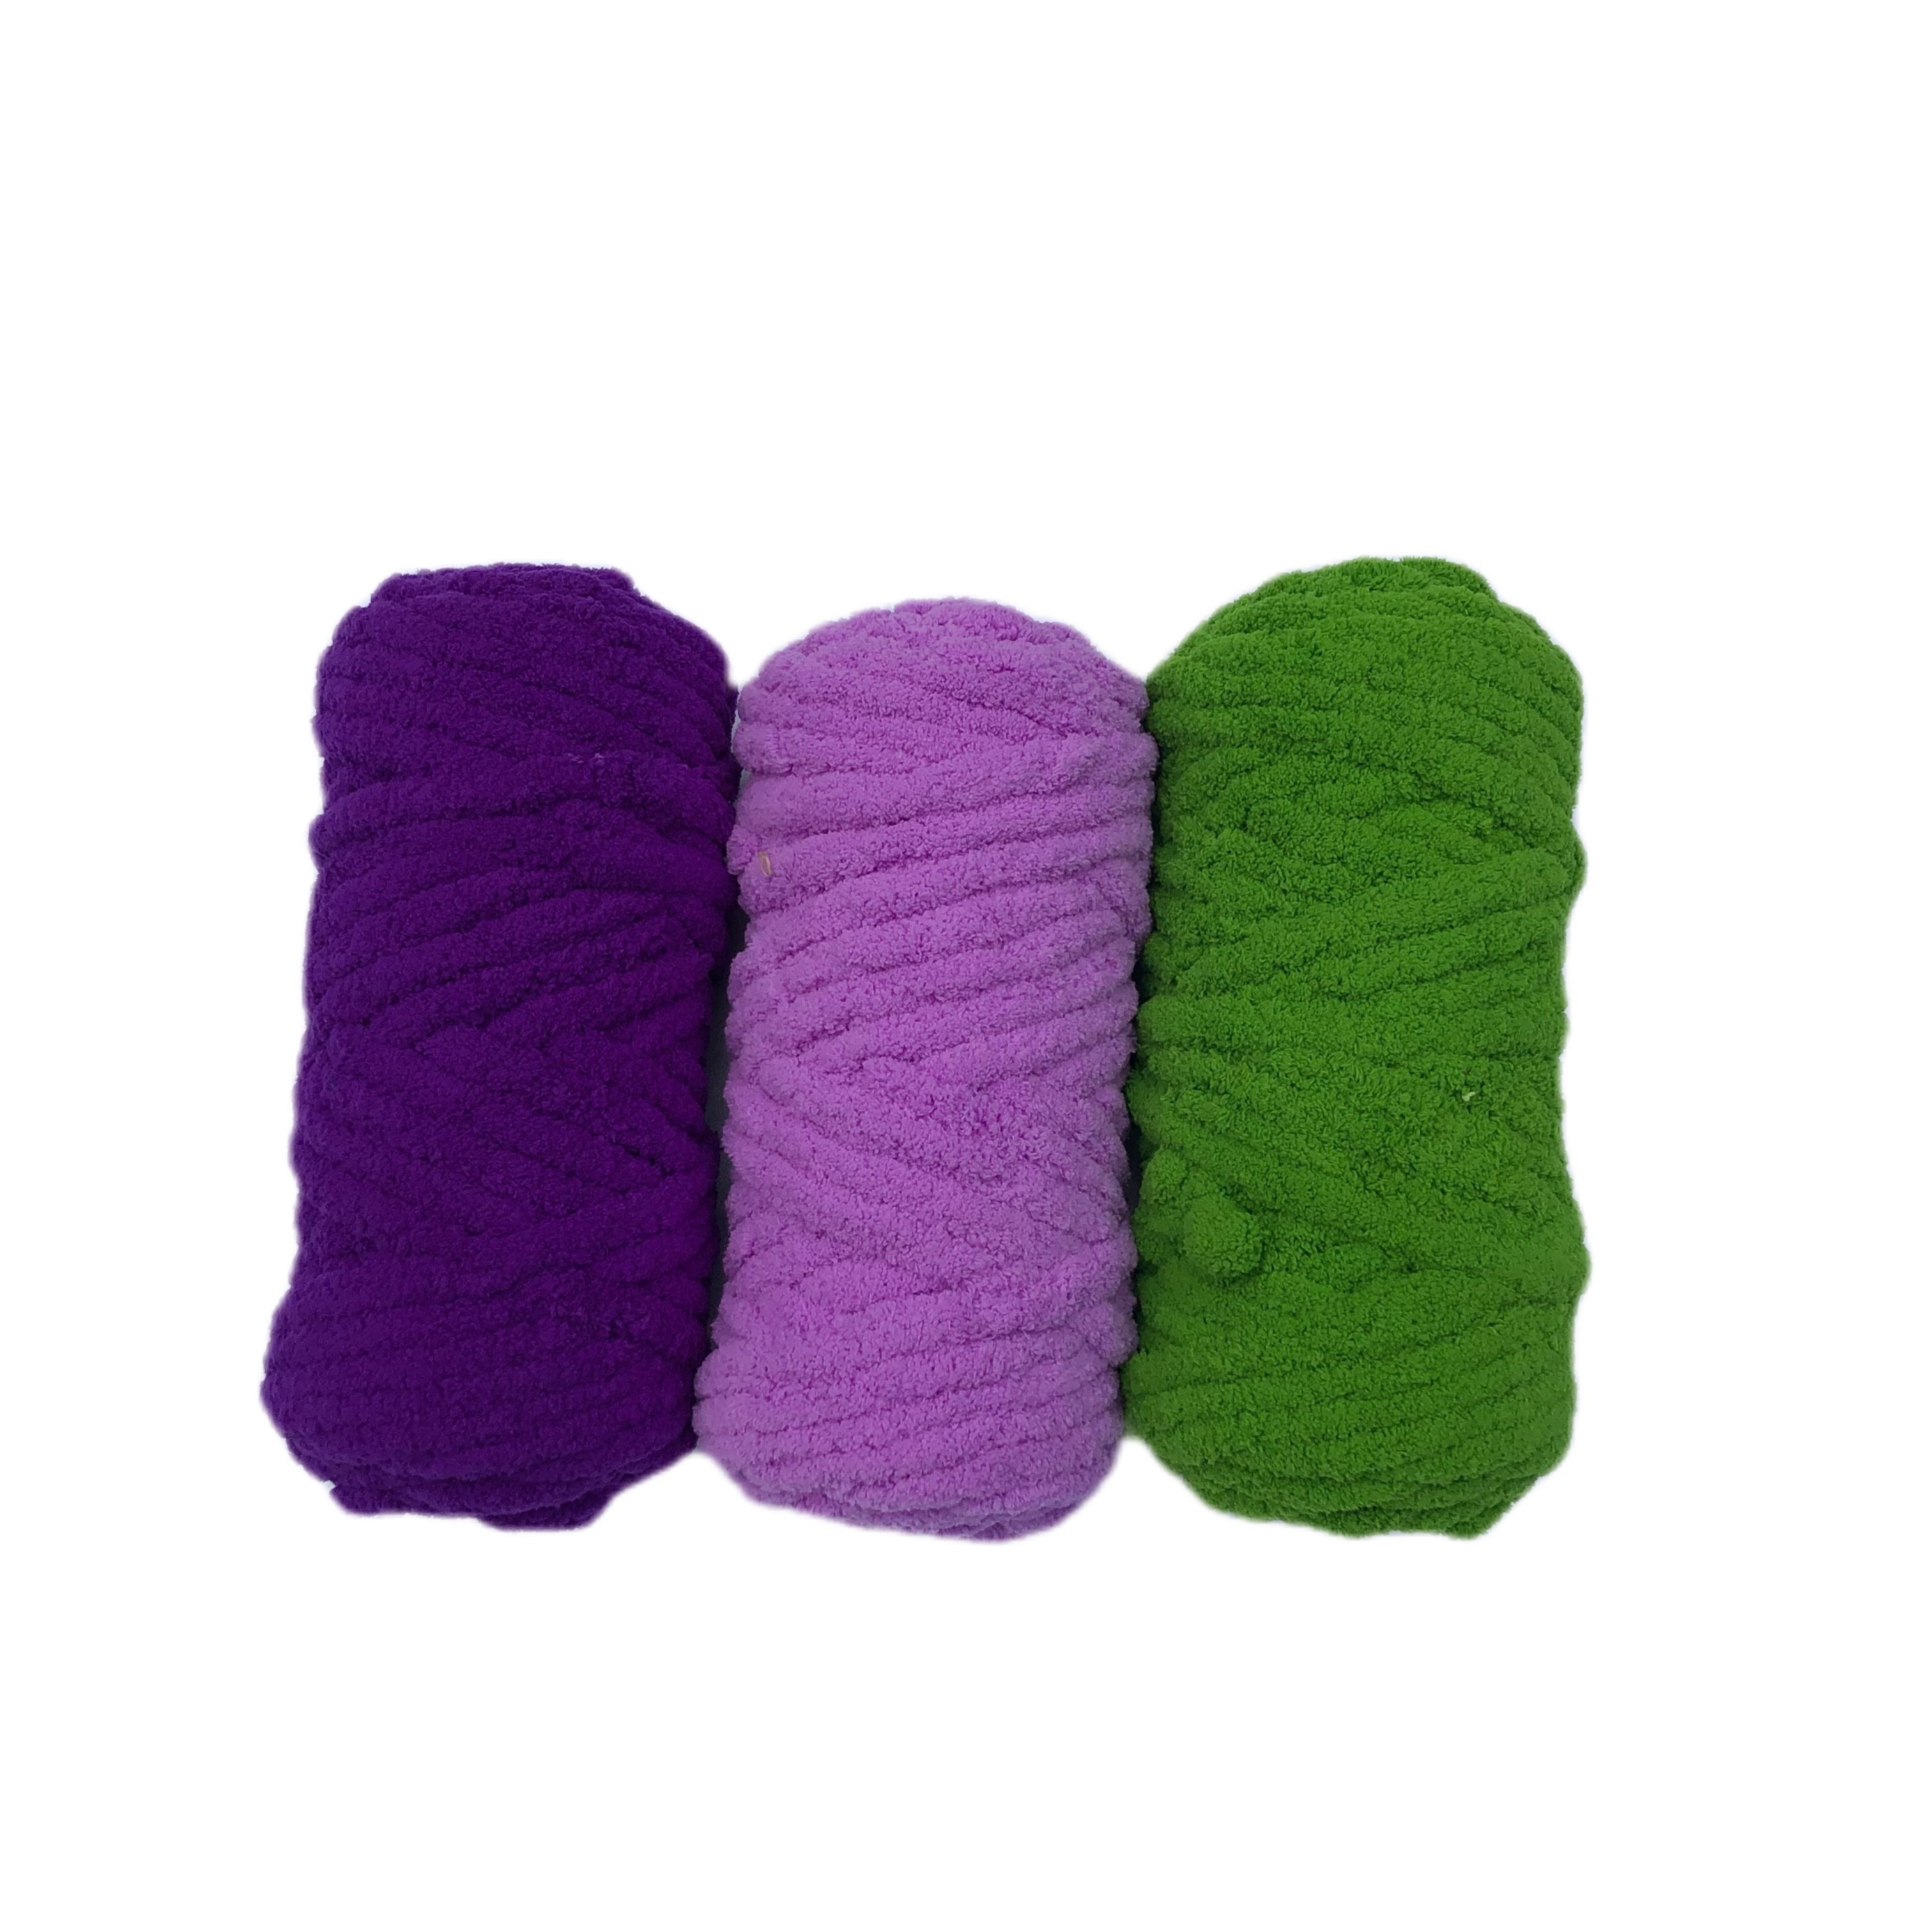  LEJIA - Bufandas de lana gruesa para tejer a mano